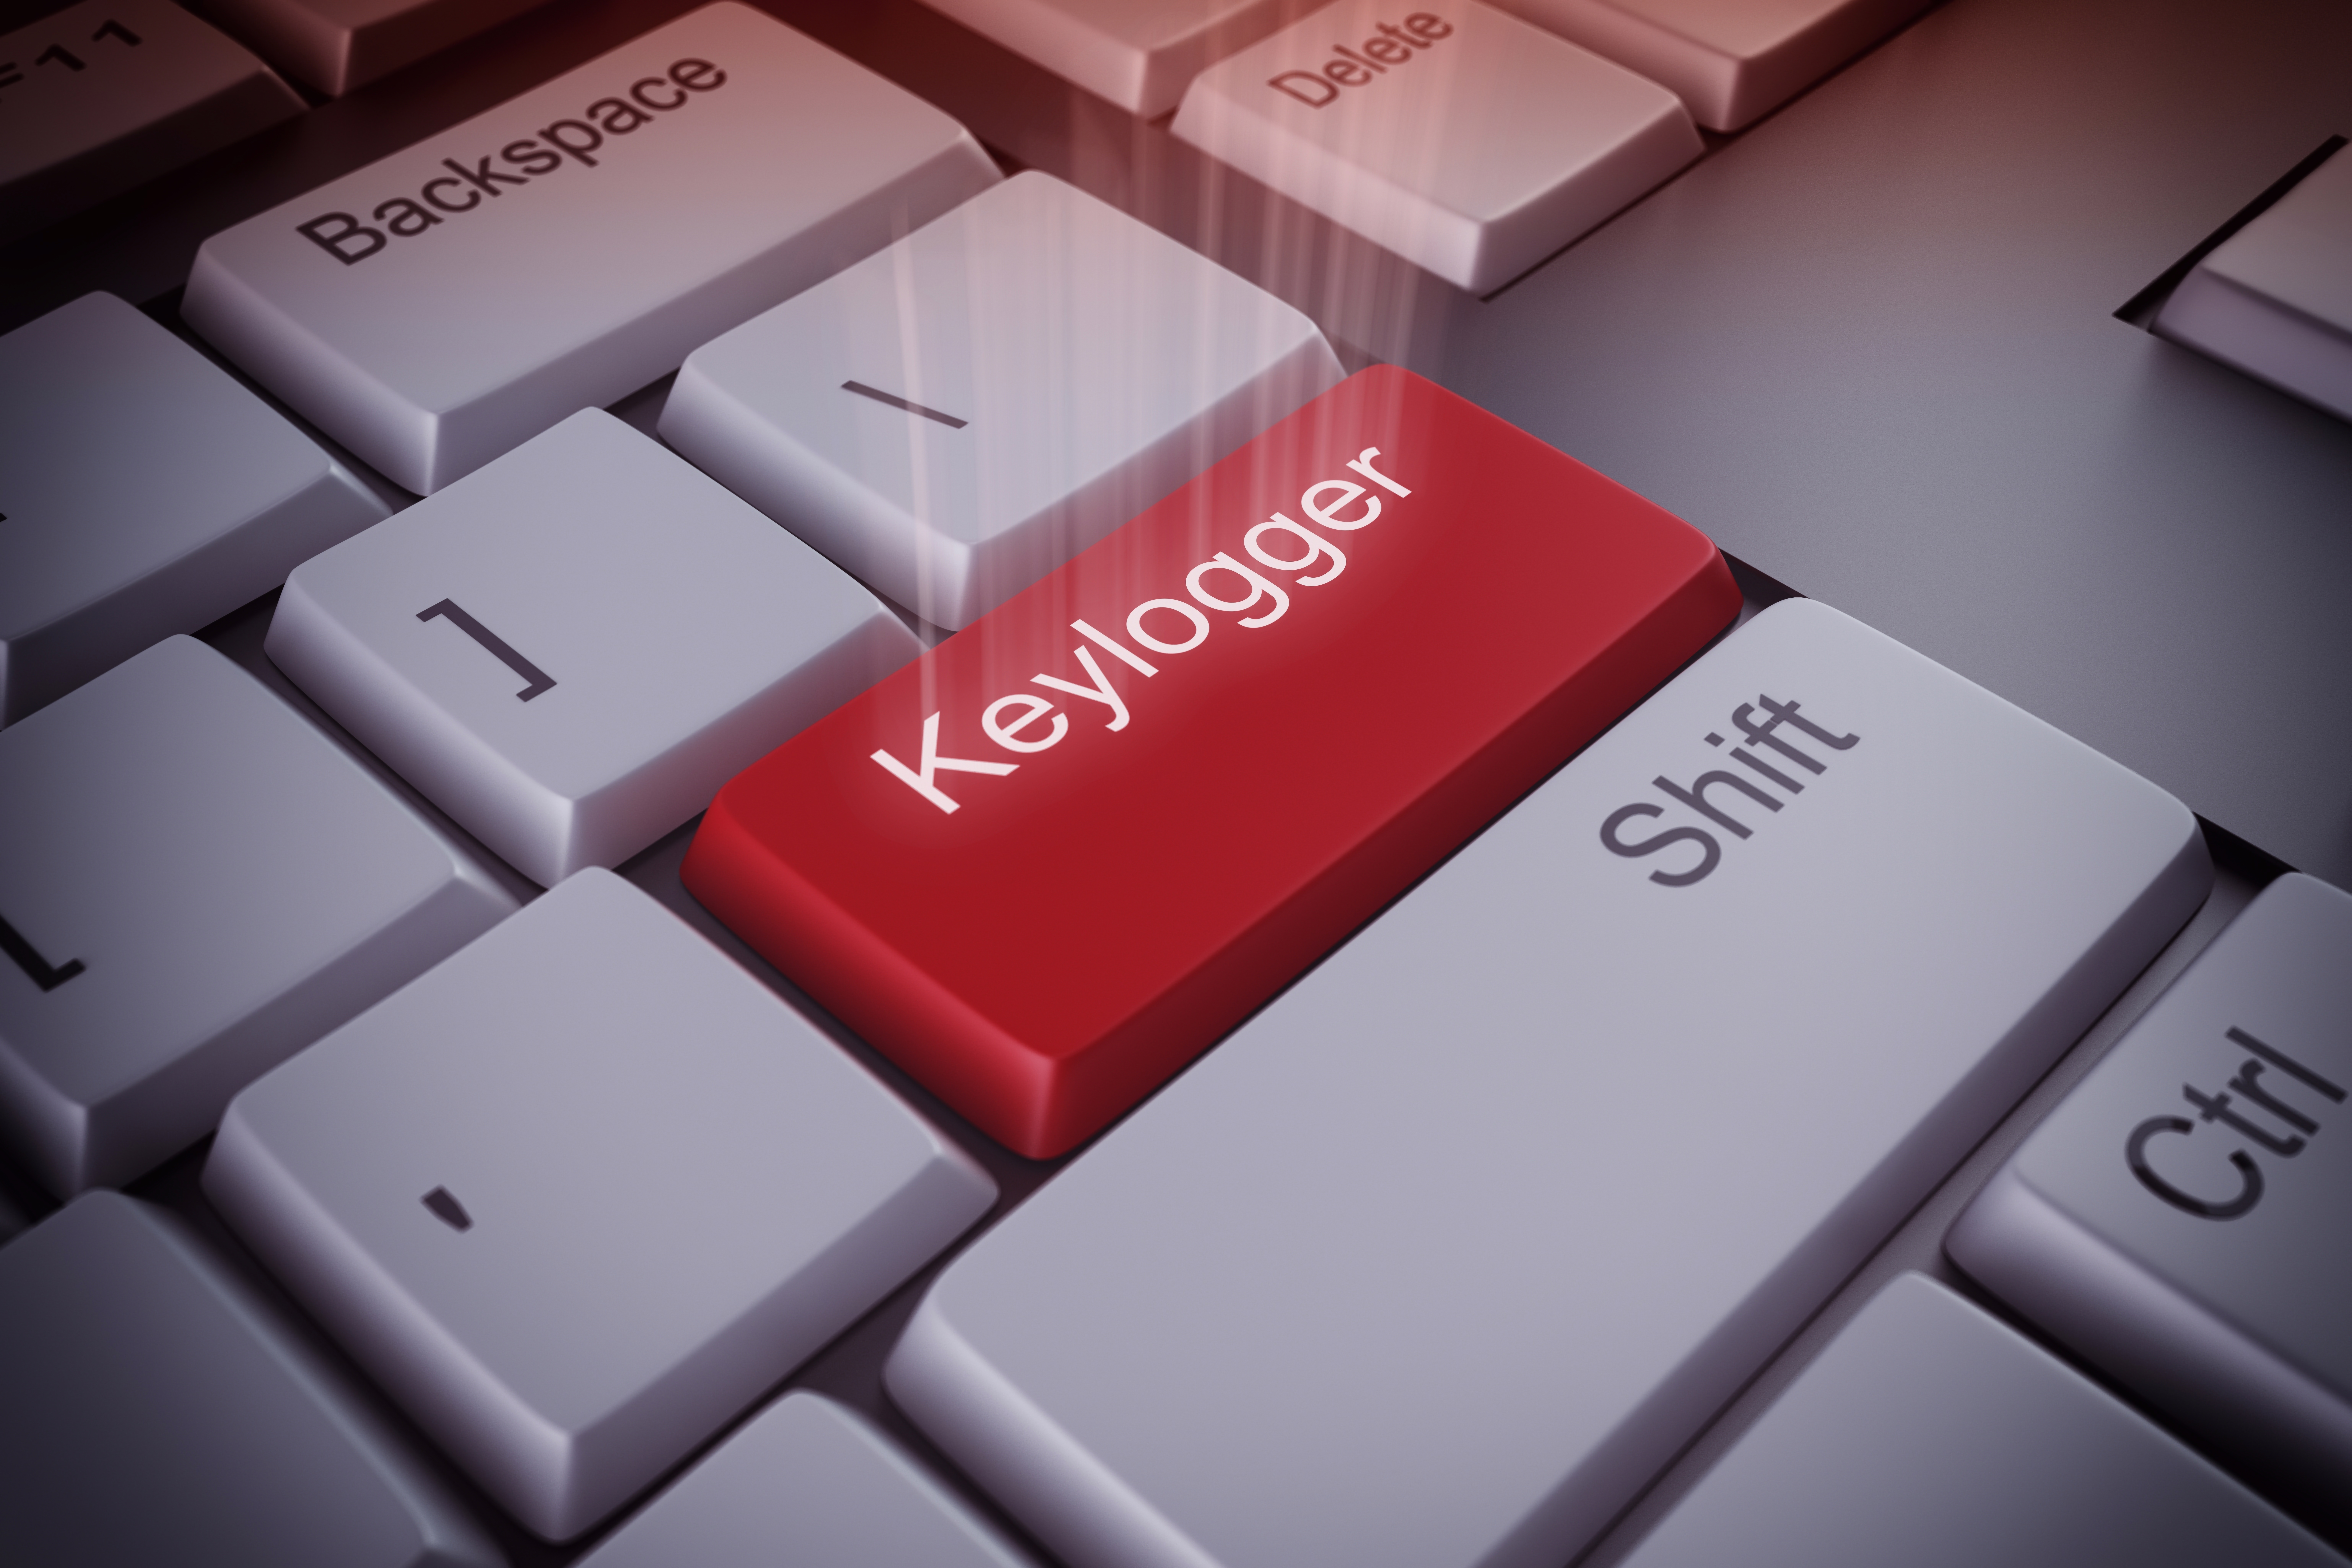 Imagen de teclado con palabra keylogger en rojo